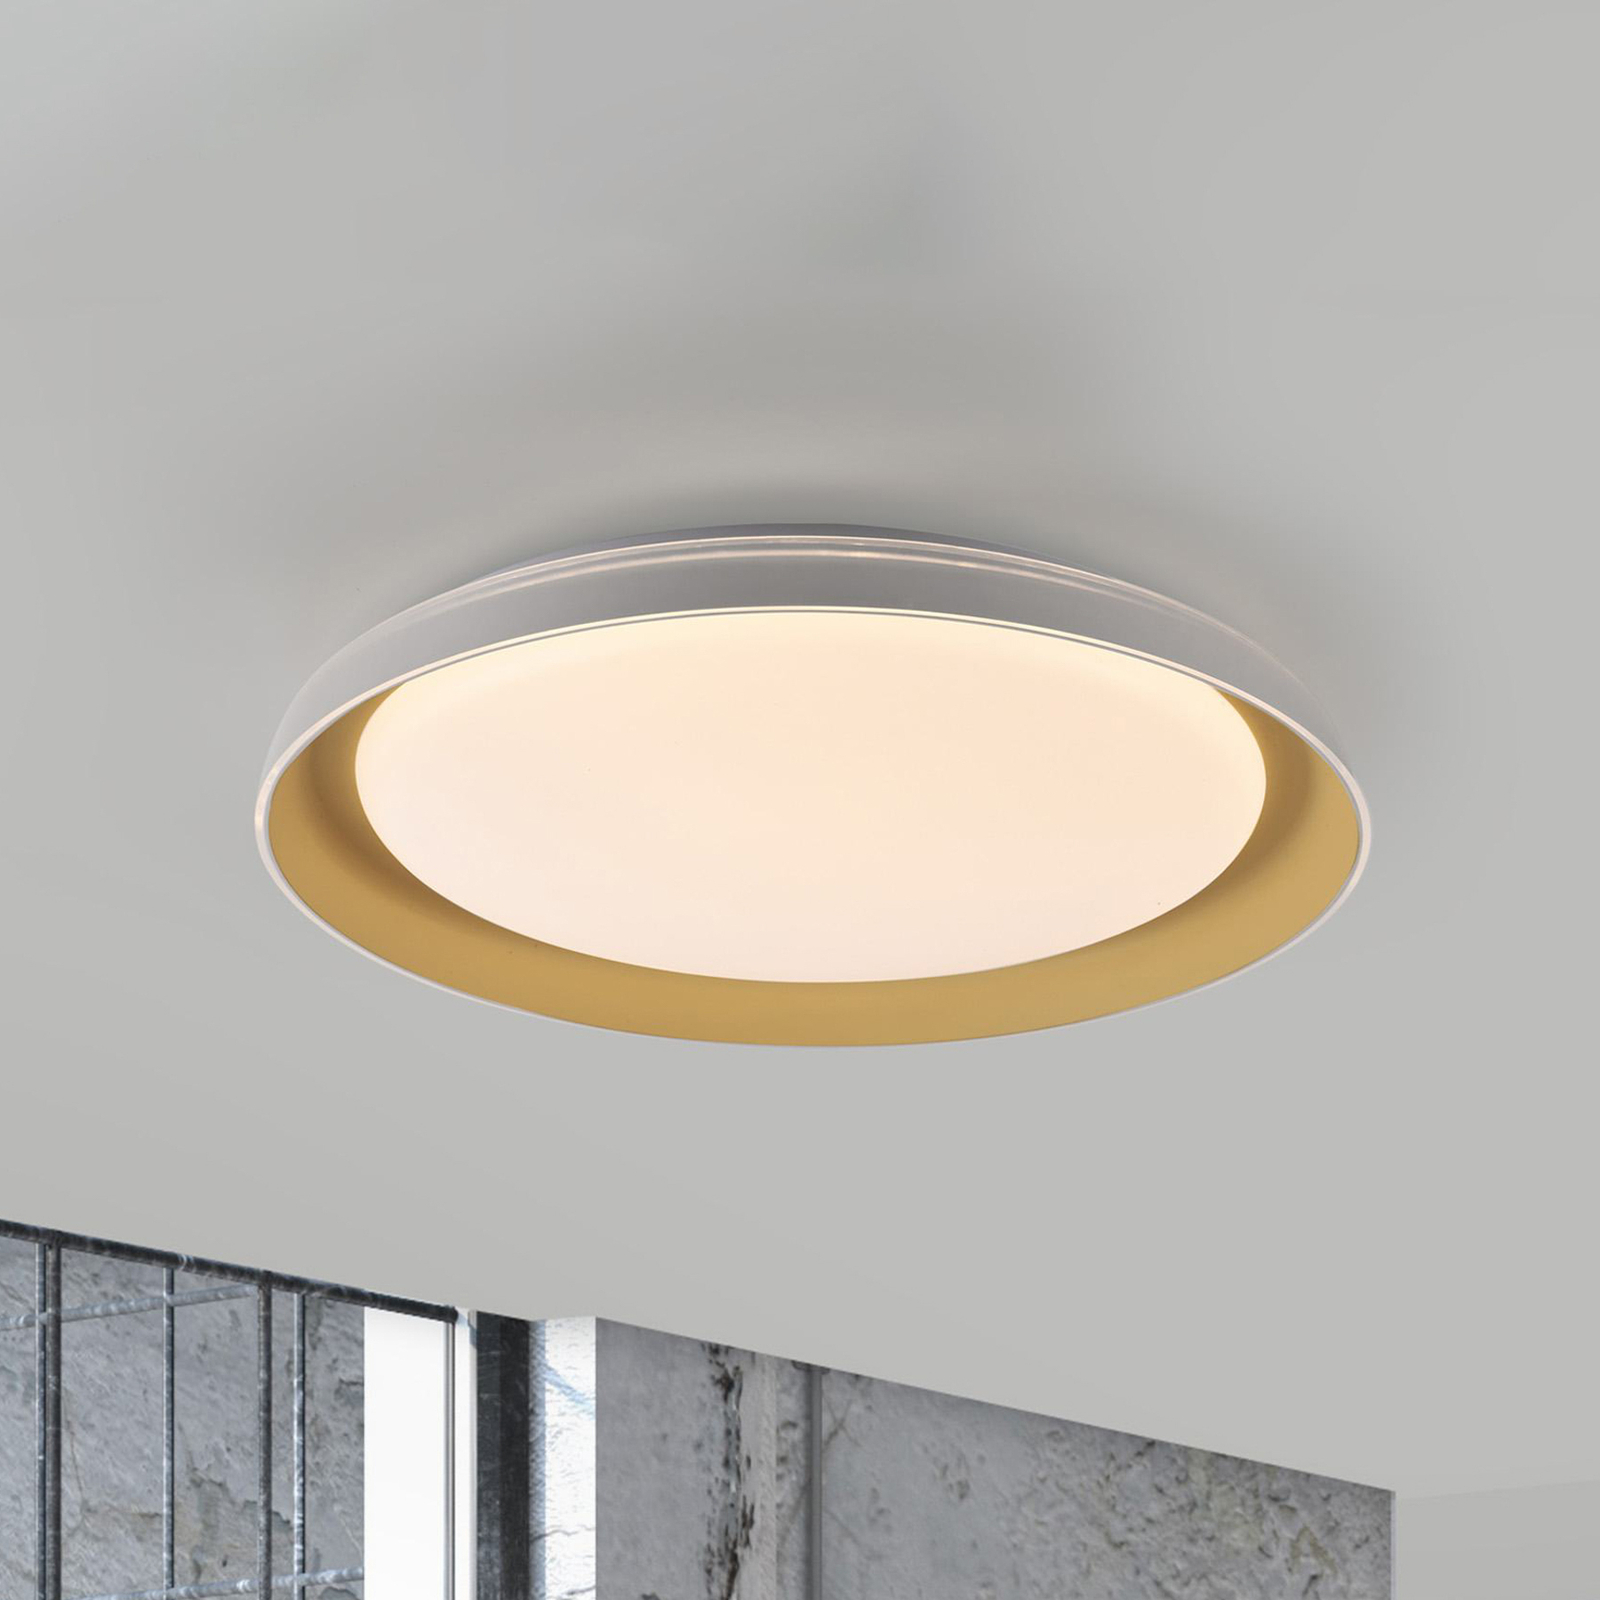 JUST LIGHT. Sati LED ceiling light, plastic, white/brass